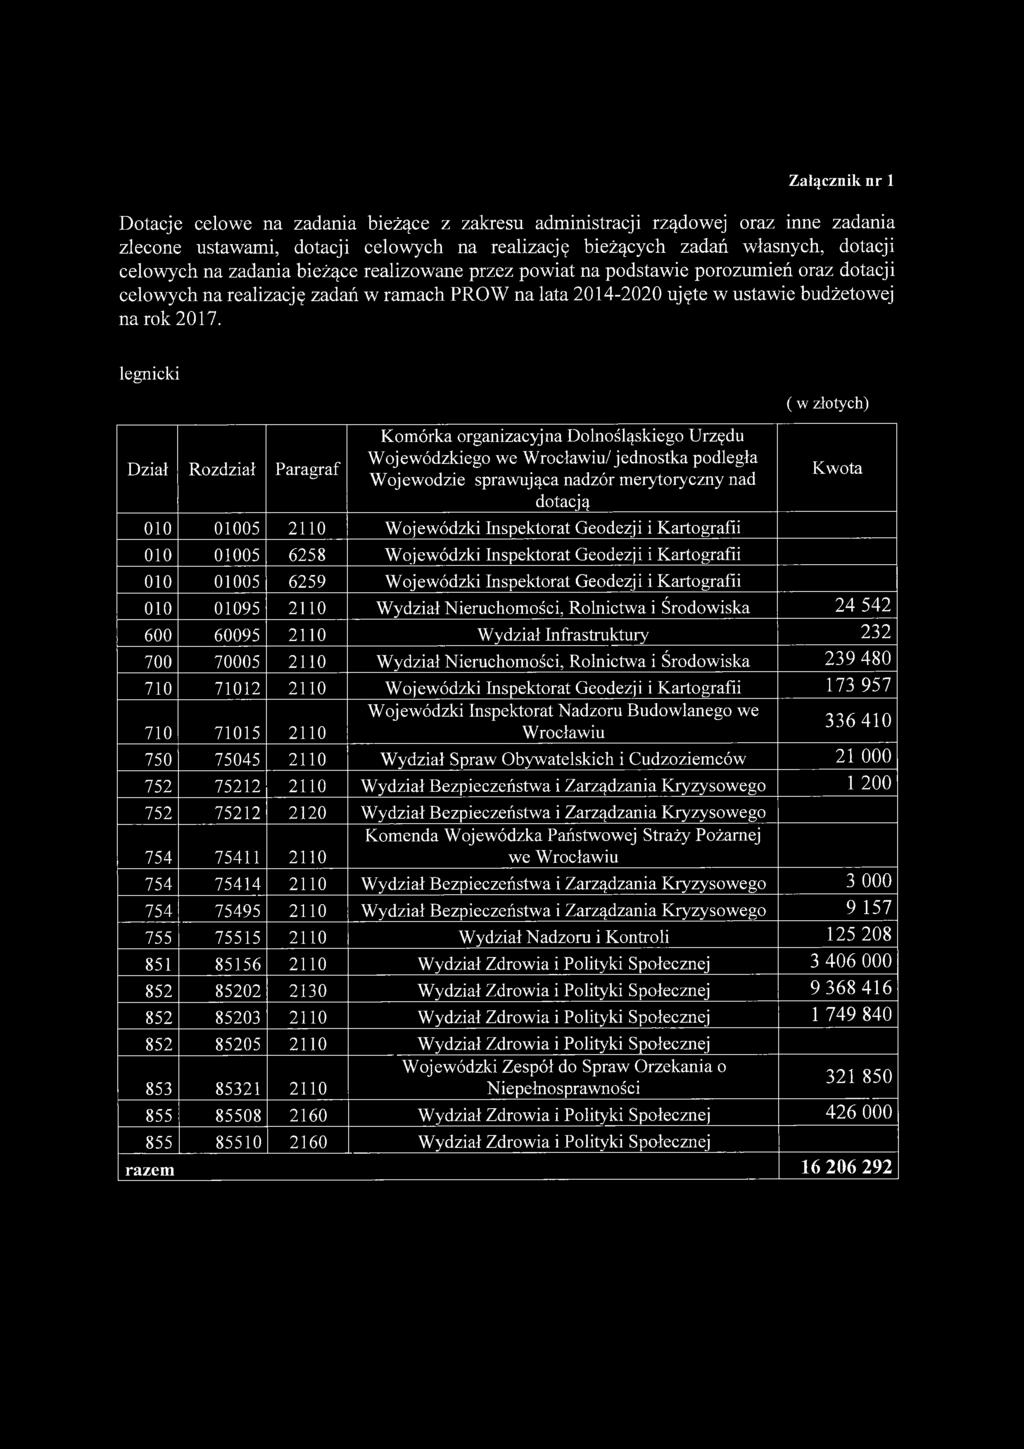 legnicki Dział Rozdział Paragraf Komórka organizacyjna Dolnośląskiego Urzędu Wojewódzkiego we Wrocławiu/ jednostka podległa Wojewodzie sprawująca nadzór merytoryczny nad dotacją 010 01005 2110